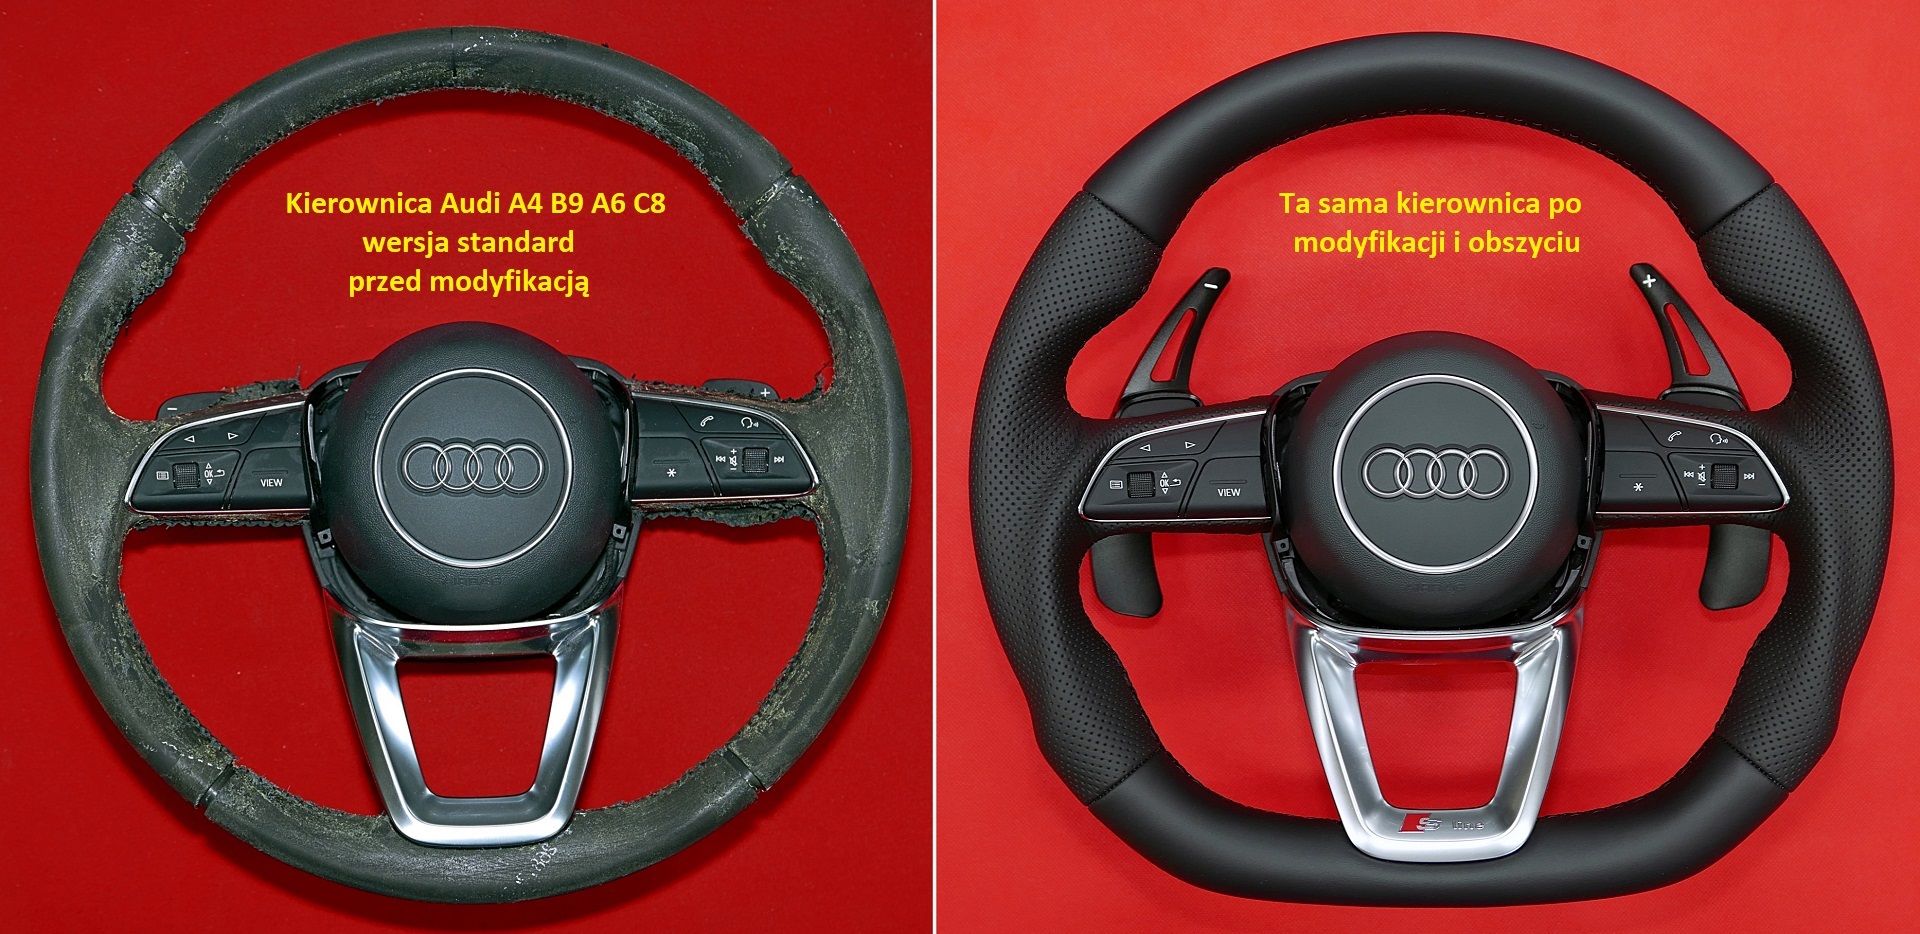 tunning flat steering wheel customs audi